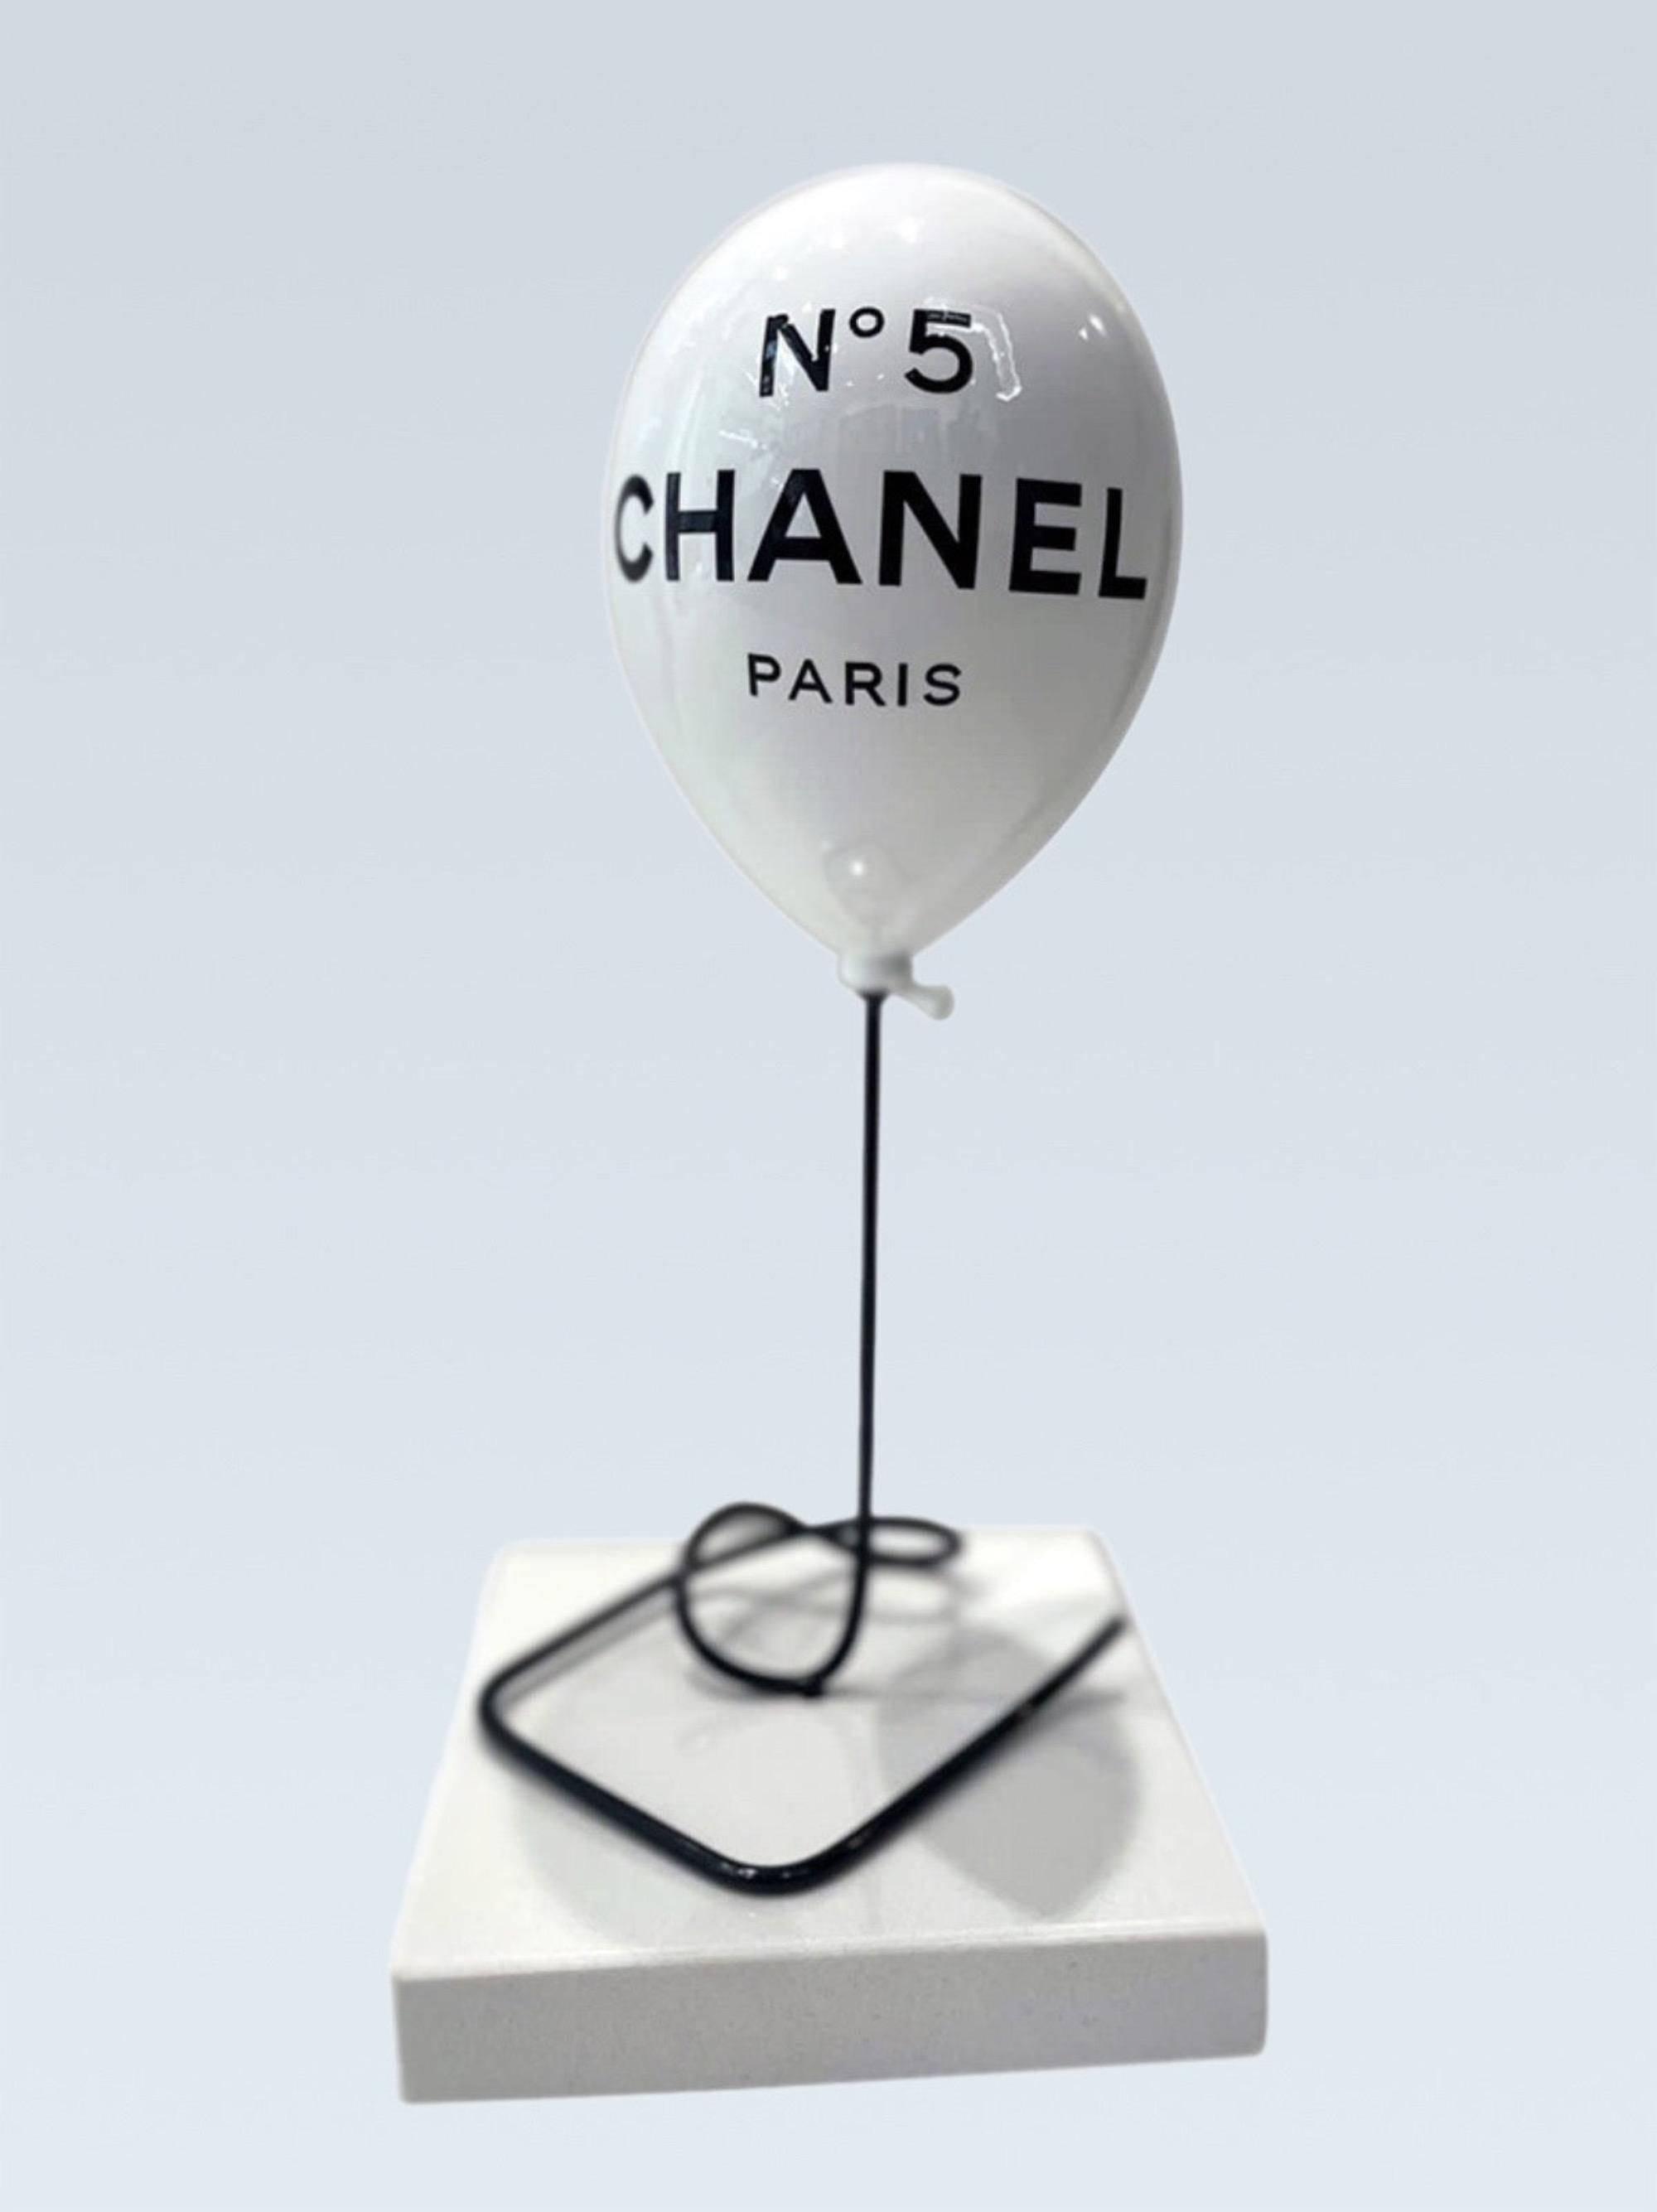 Naor Figurative Sculpture - NAOR - 45cm Balloon CH Tribute, white